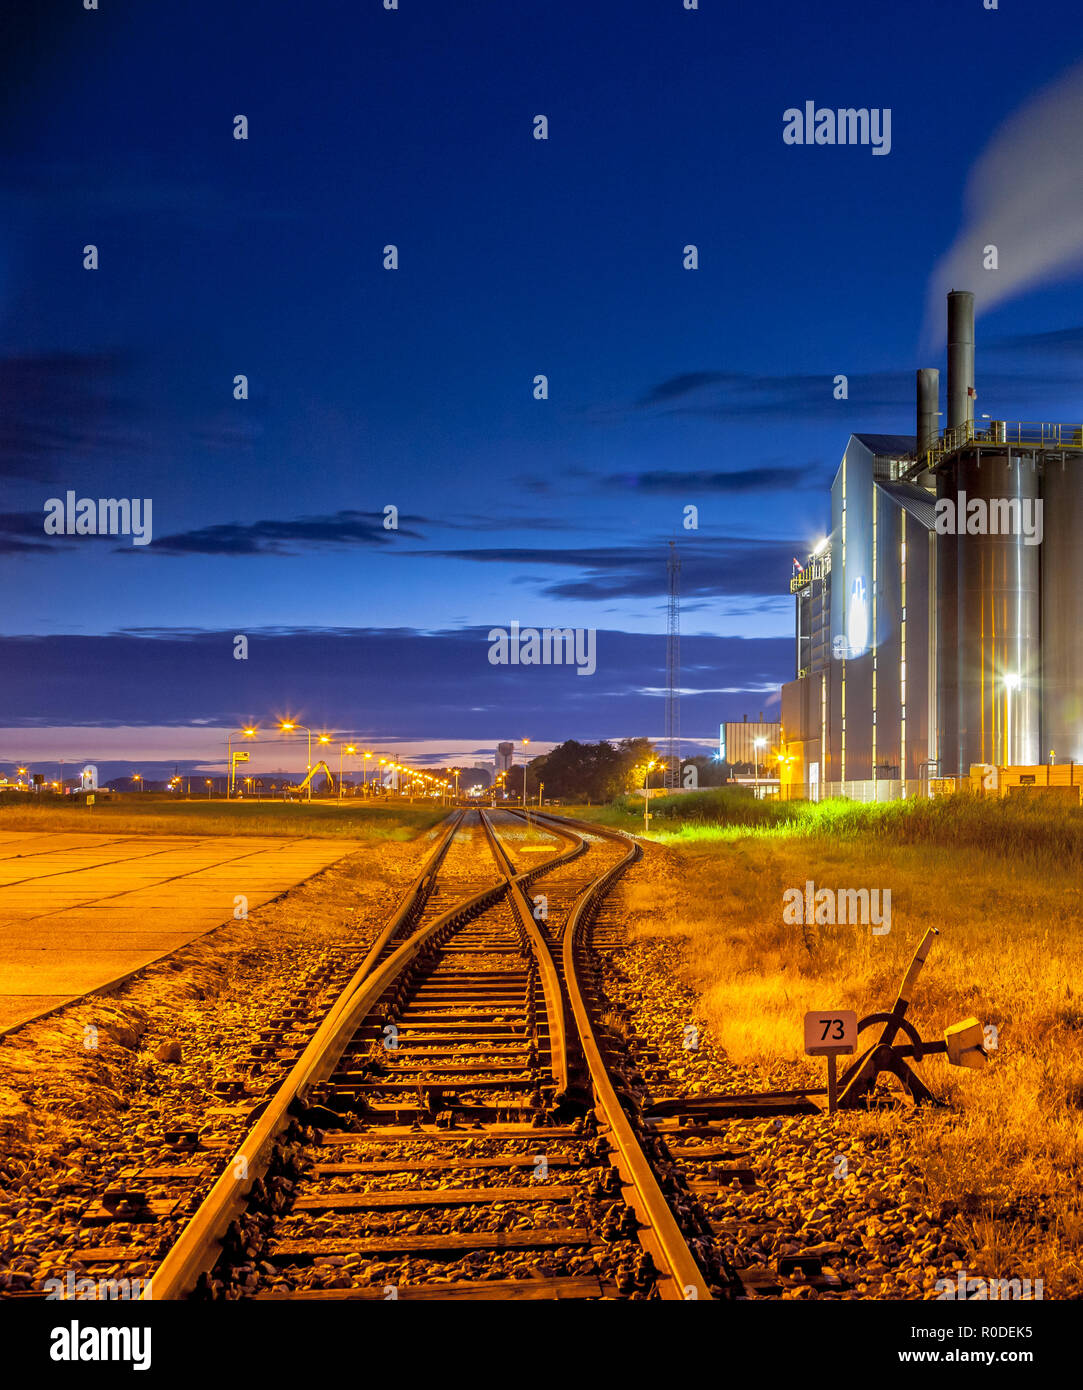 Scena notturna del deviatoio ferroviario in una pesante industriale area chimica con sognante mistico di luci e colori nel crepuscolo Foto Stock